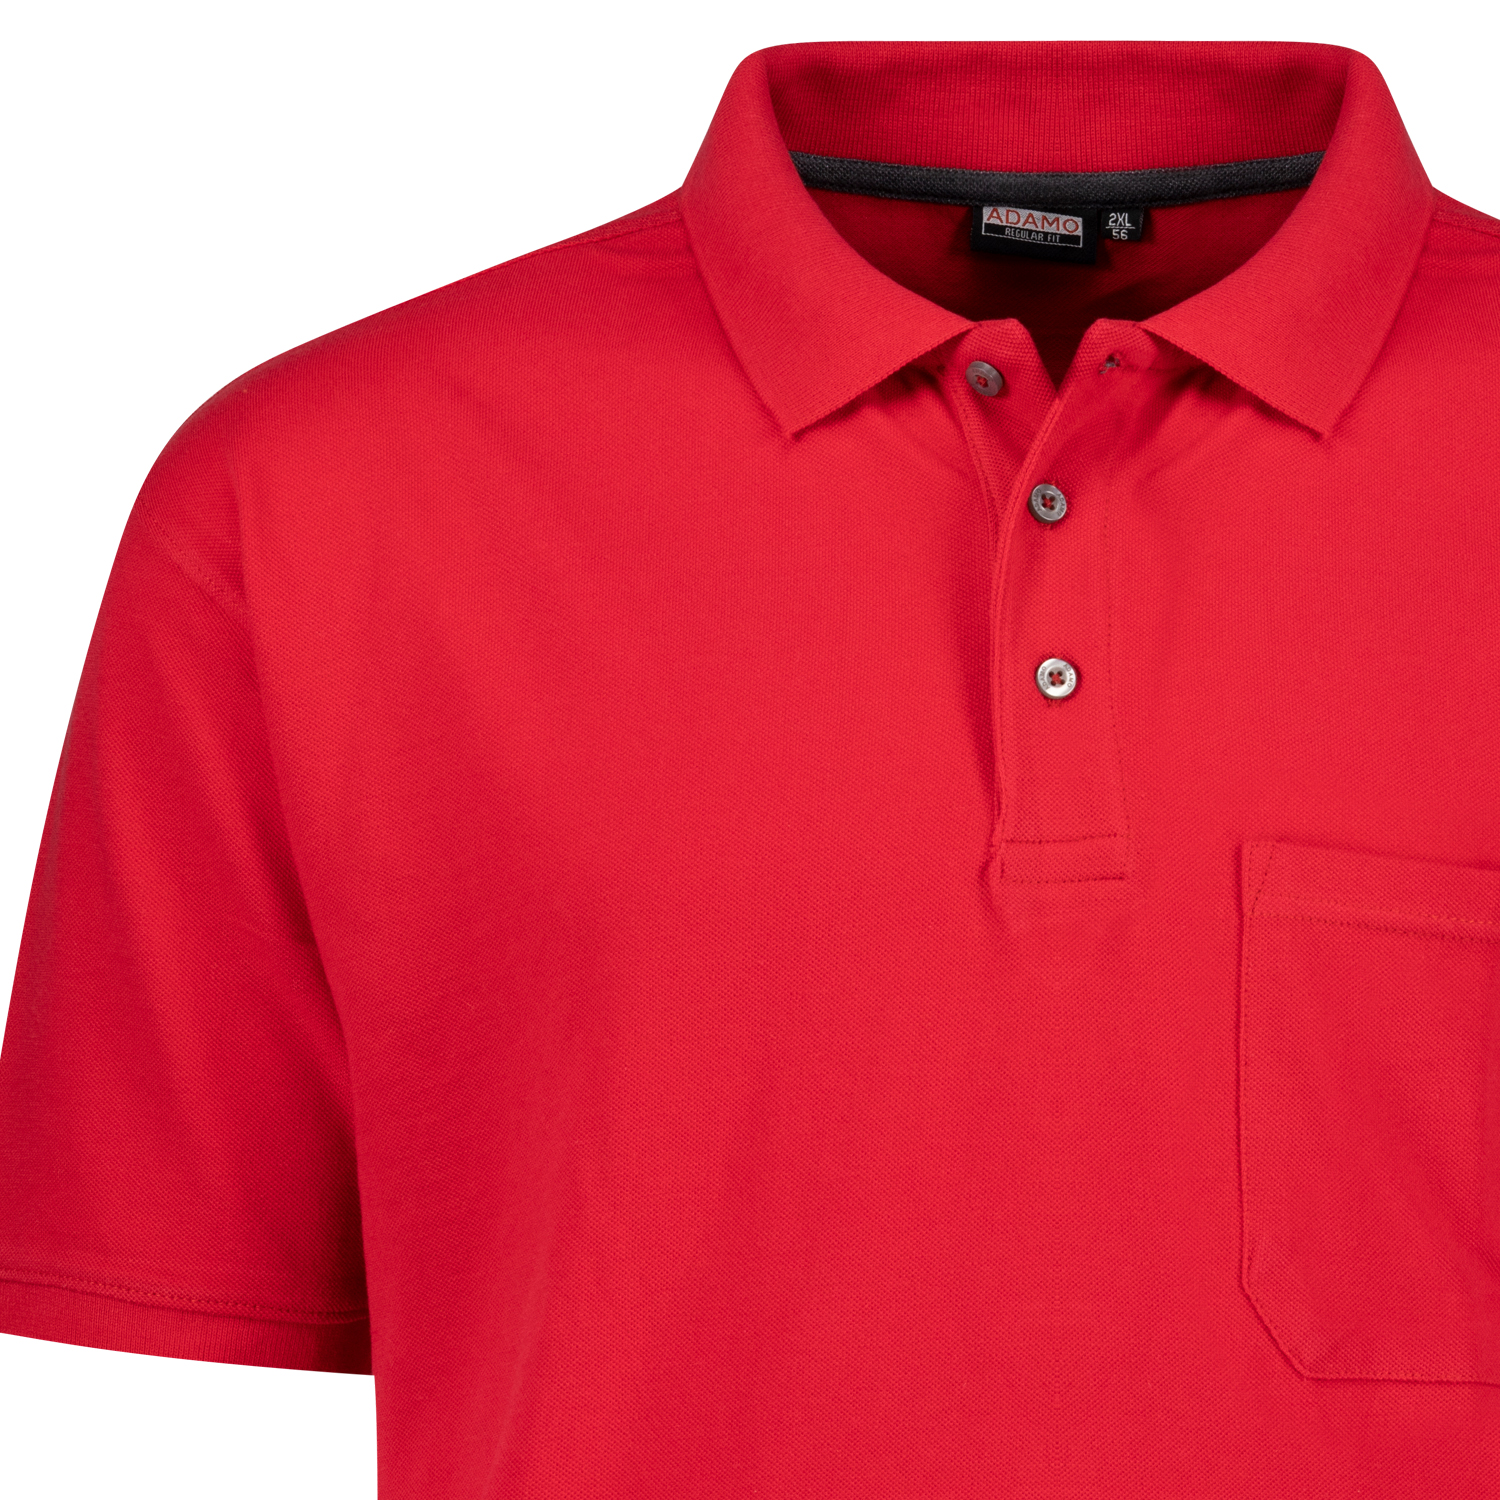 Herren Pique Poloshirt kurzarm Serie Klaas REGULAR FIT von Adamo rot in Übergrößen 2XL - 10XL